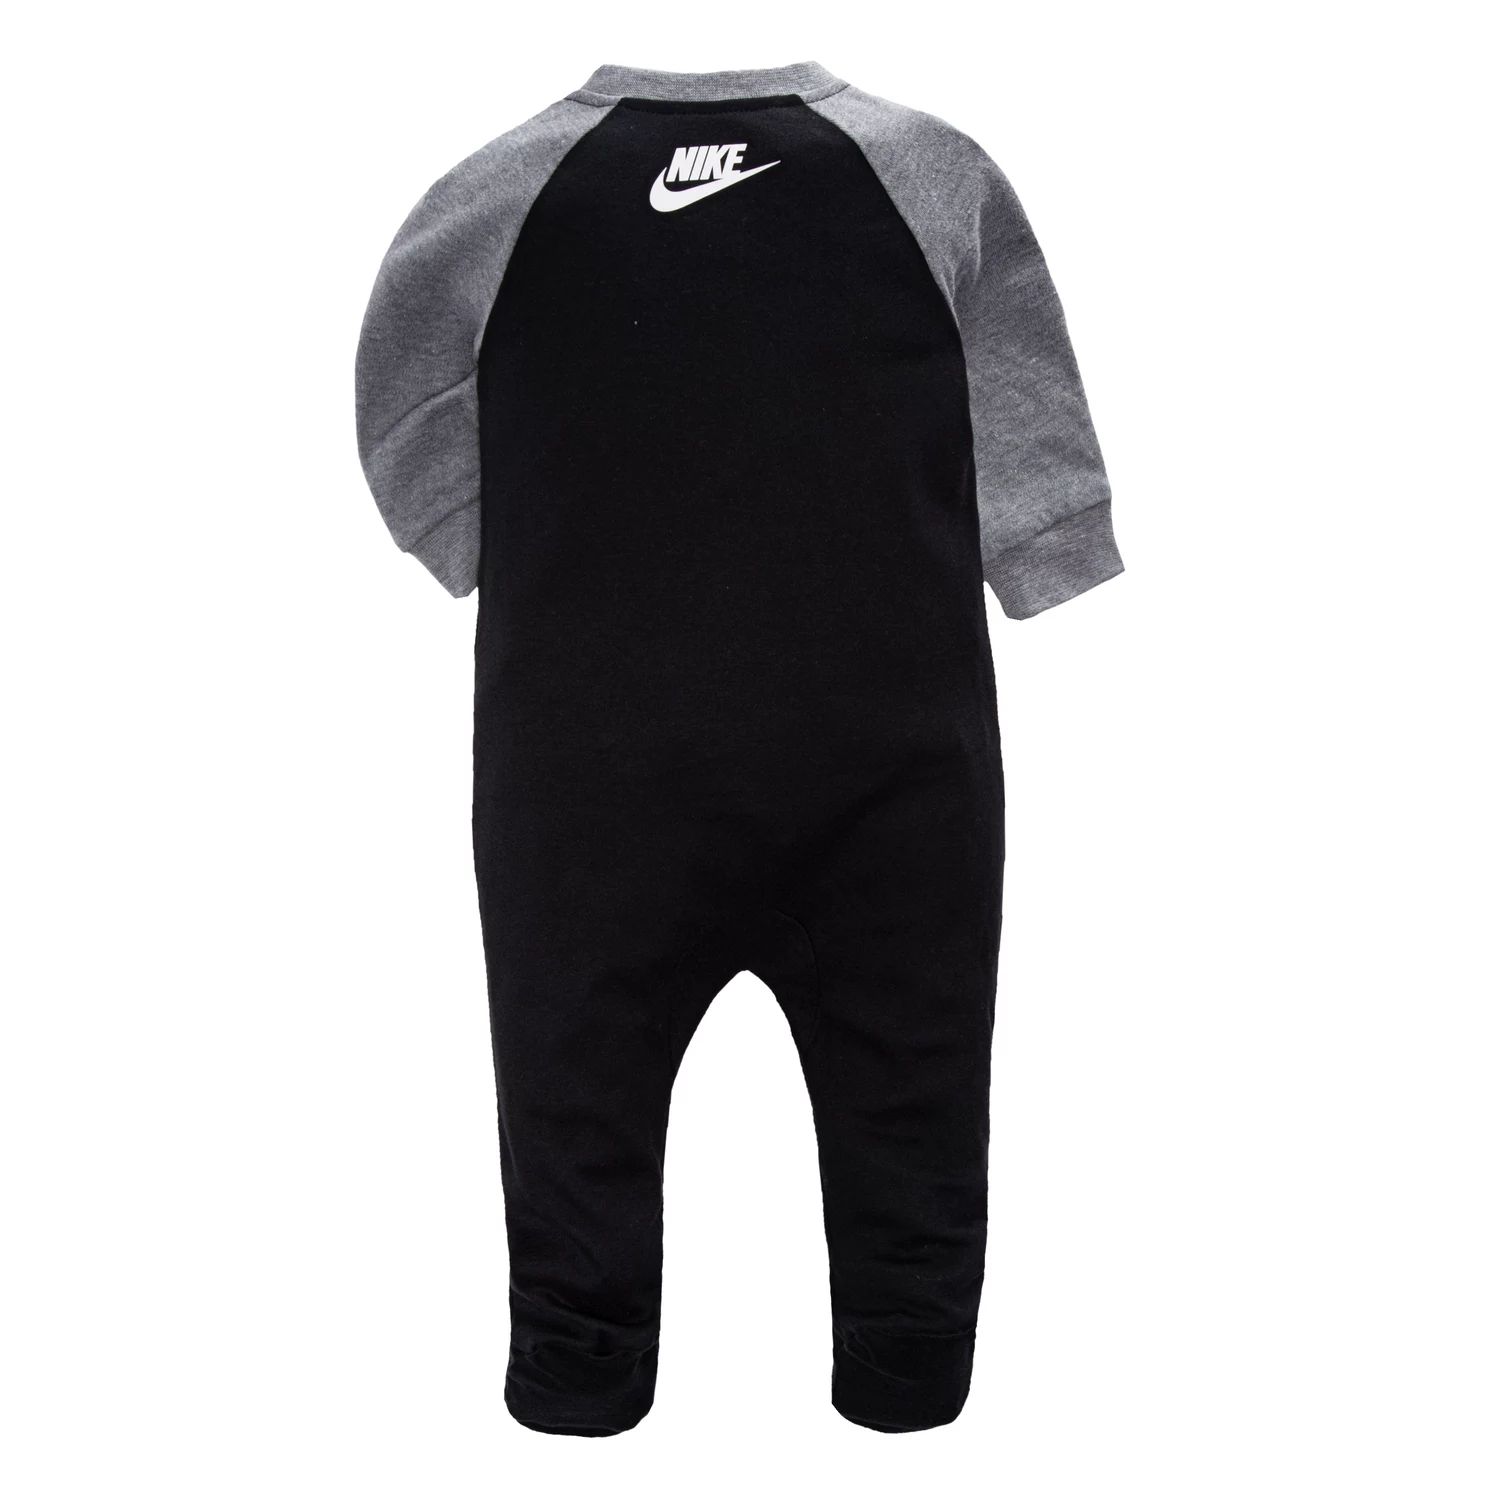 Baby Boy Nike Futura Black Footed Sleep & Play Nike